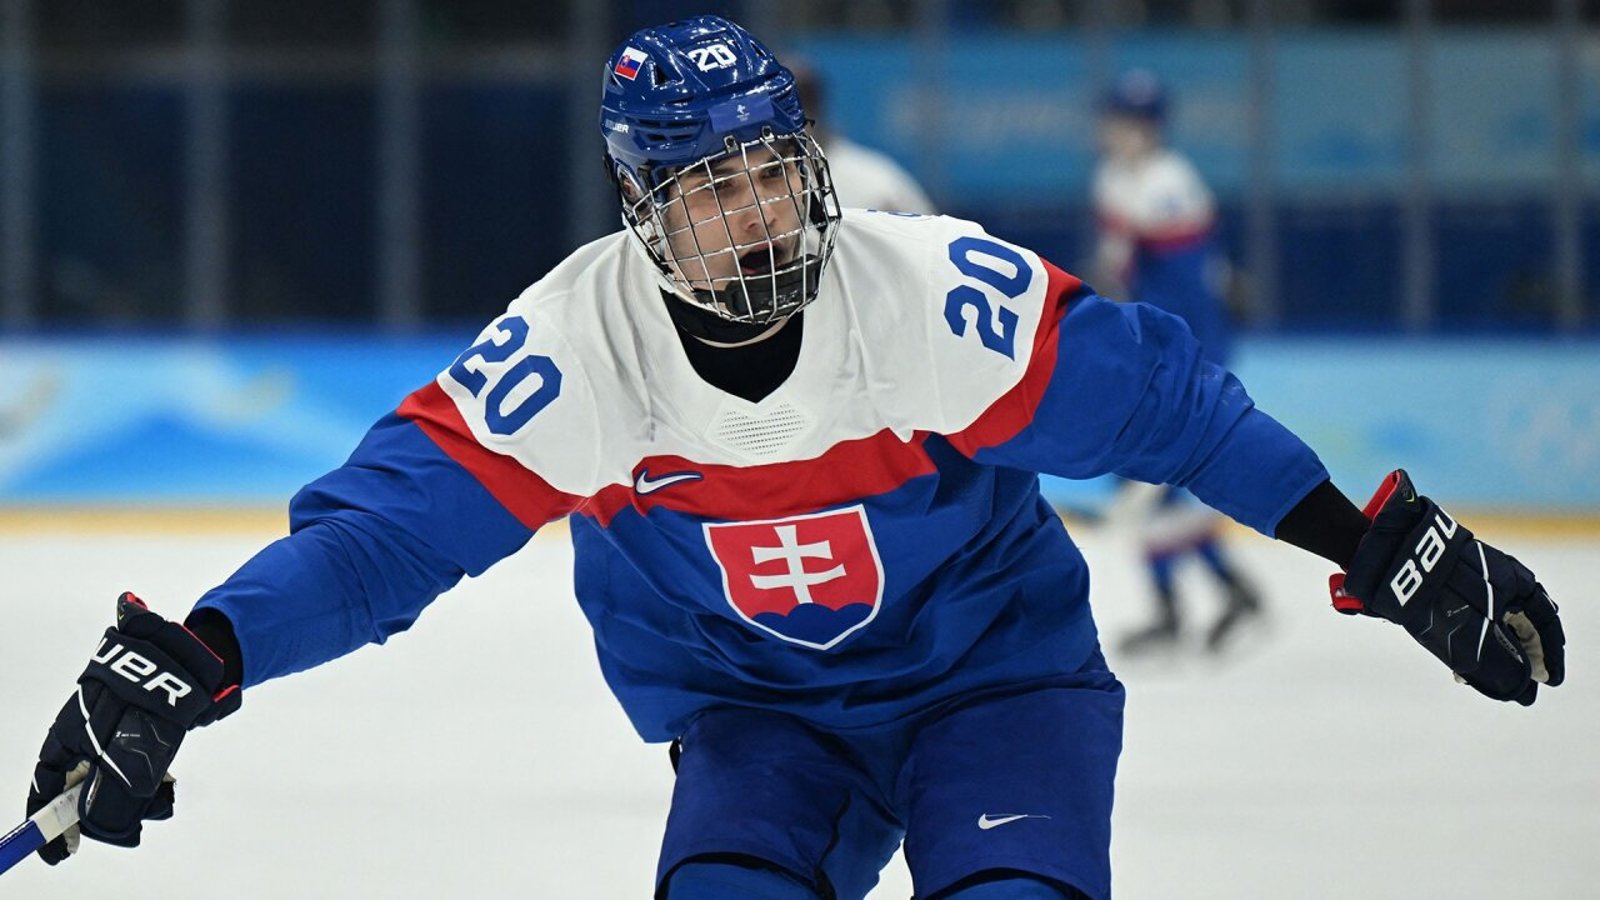 À 17 ans, Juraj Slafkovsky mène la Slovaquie vers une première médaille olympique au hockey